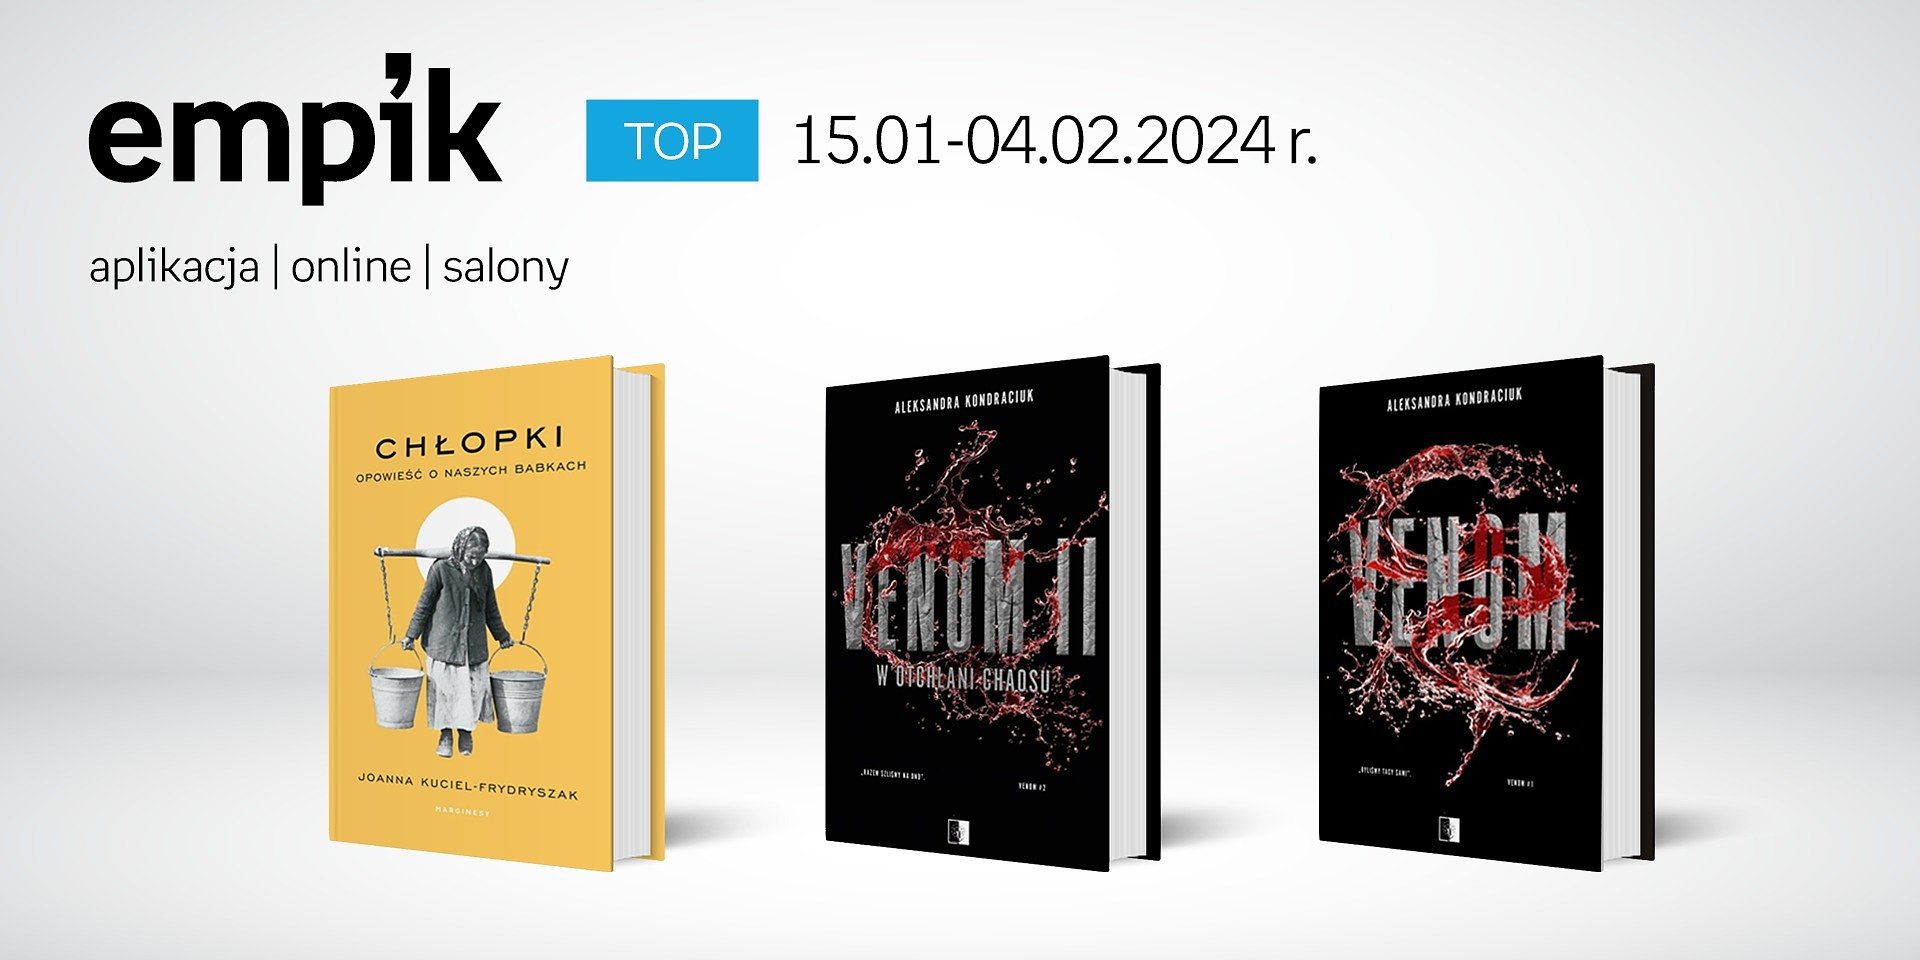 Książkowe listy bestsellerów w Empiku za okres 15.01-04.02.2024 r.